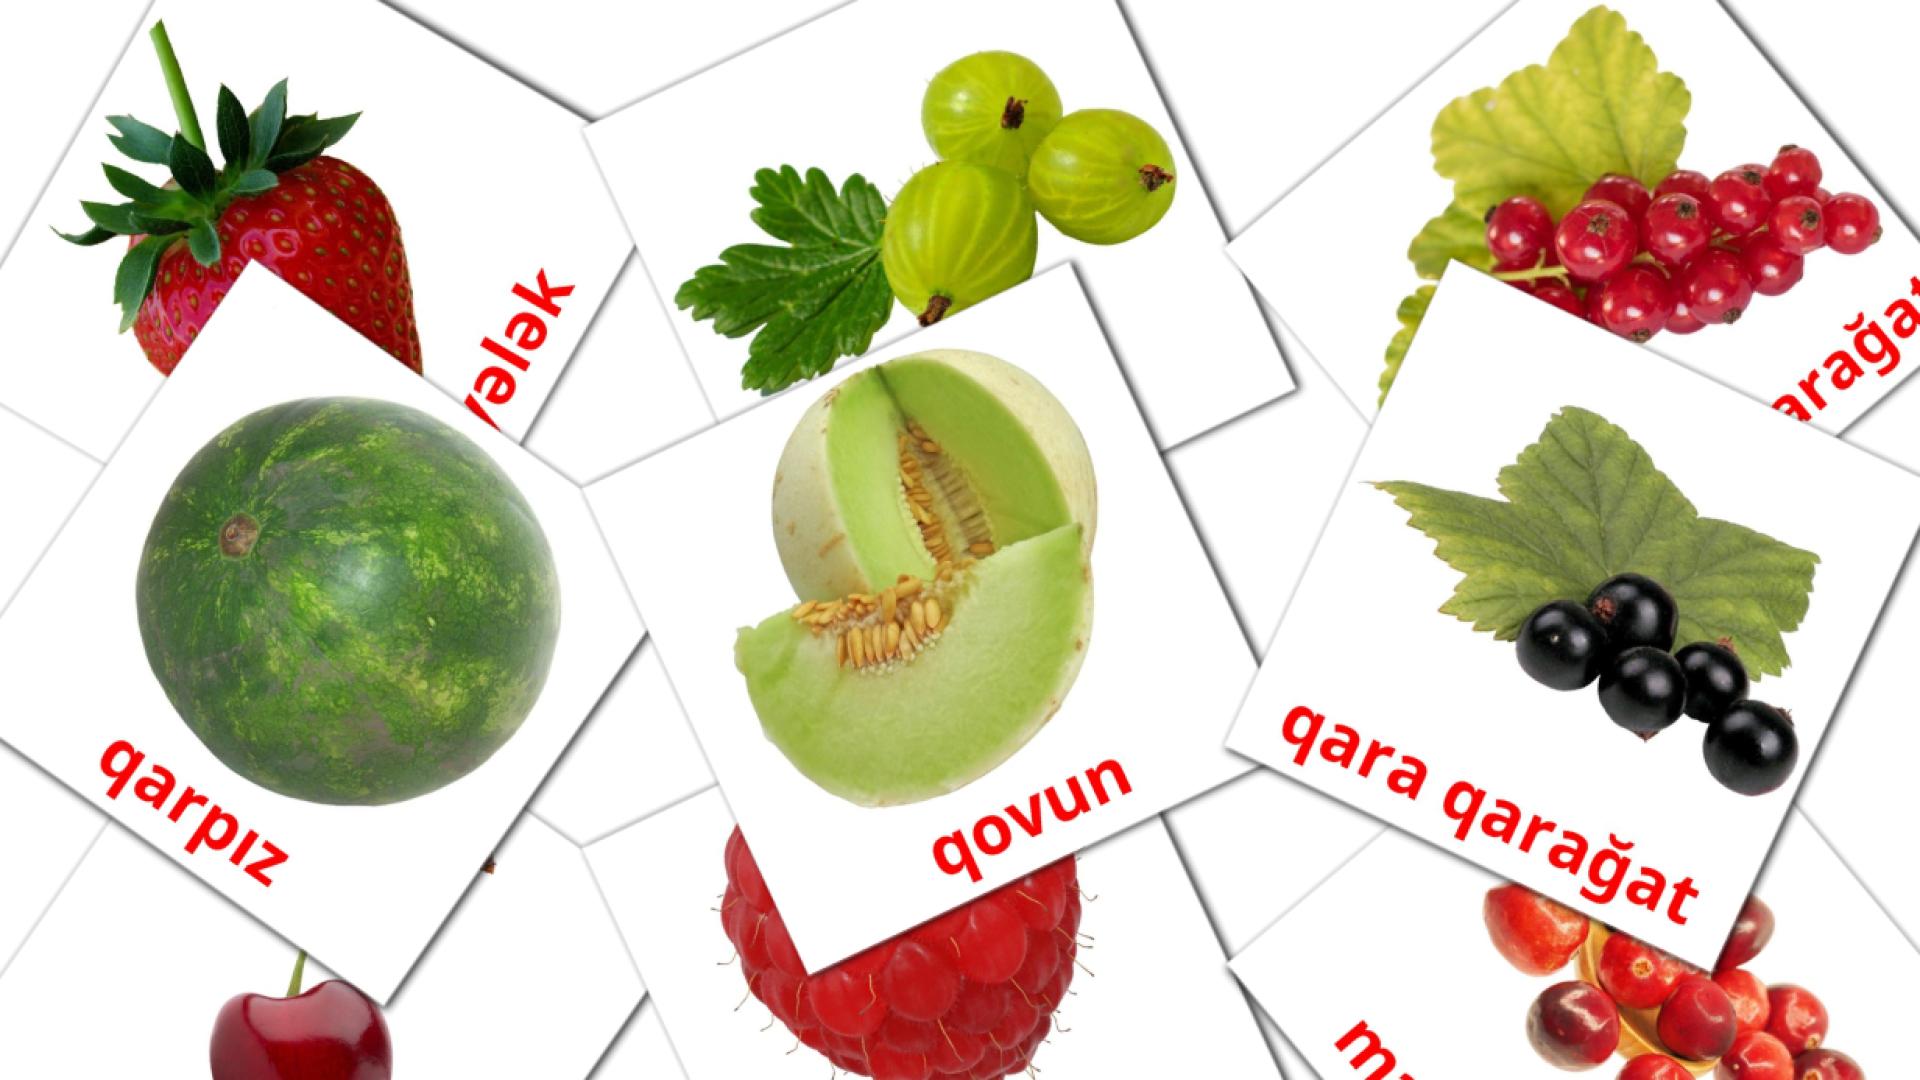 Berries - azerbaijani vocabulary cards